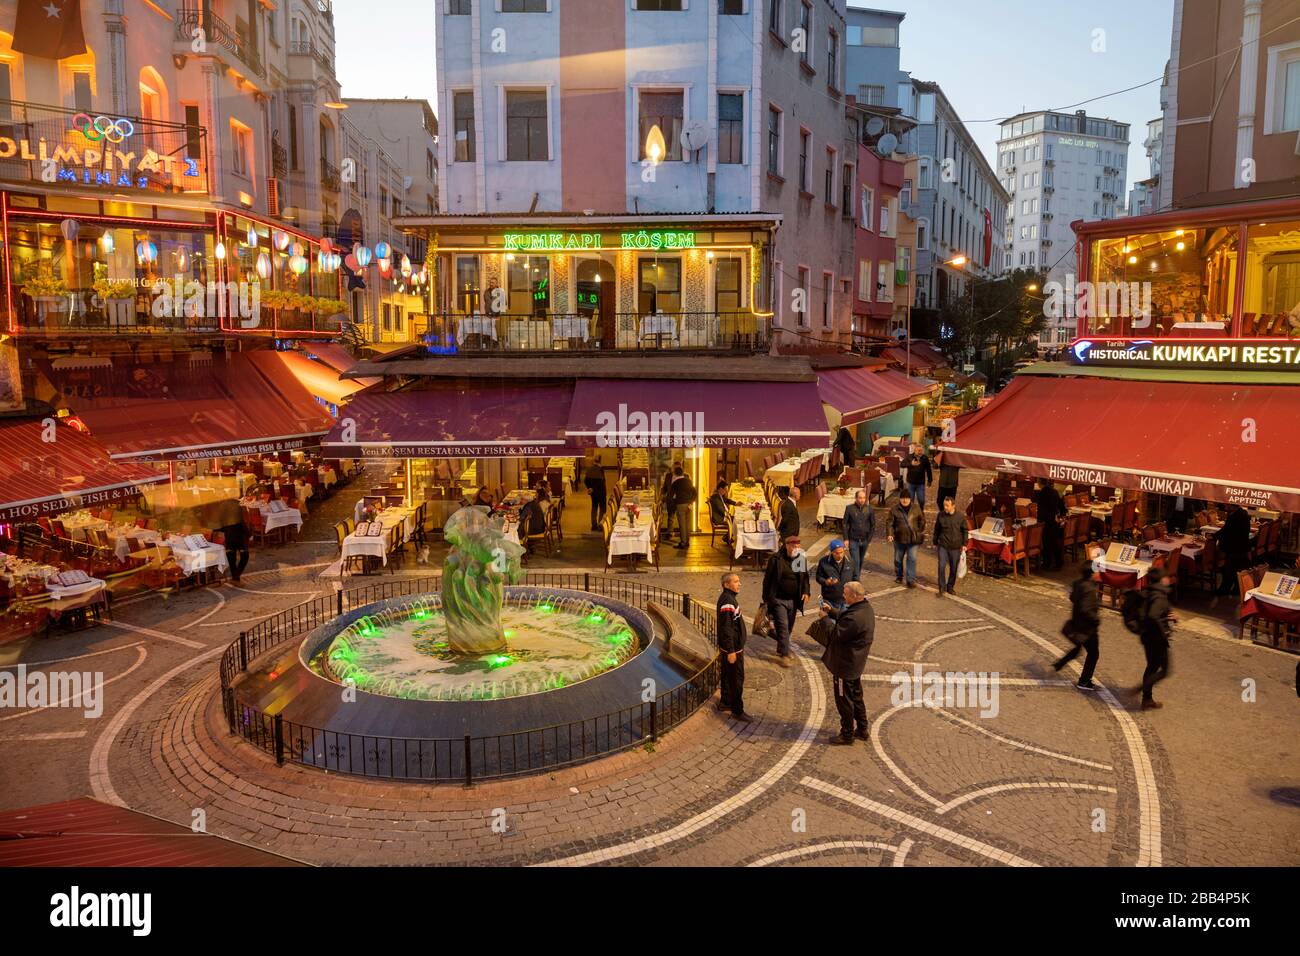 Türkei, Istanbul, Kumkapi, Vergnügungsviertel und Fischrestaurants Stock Photo